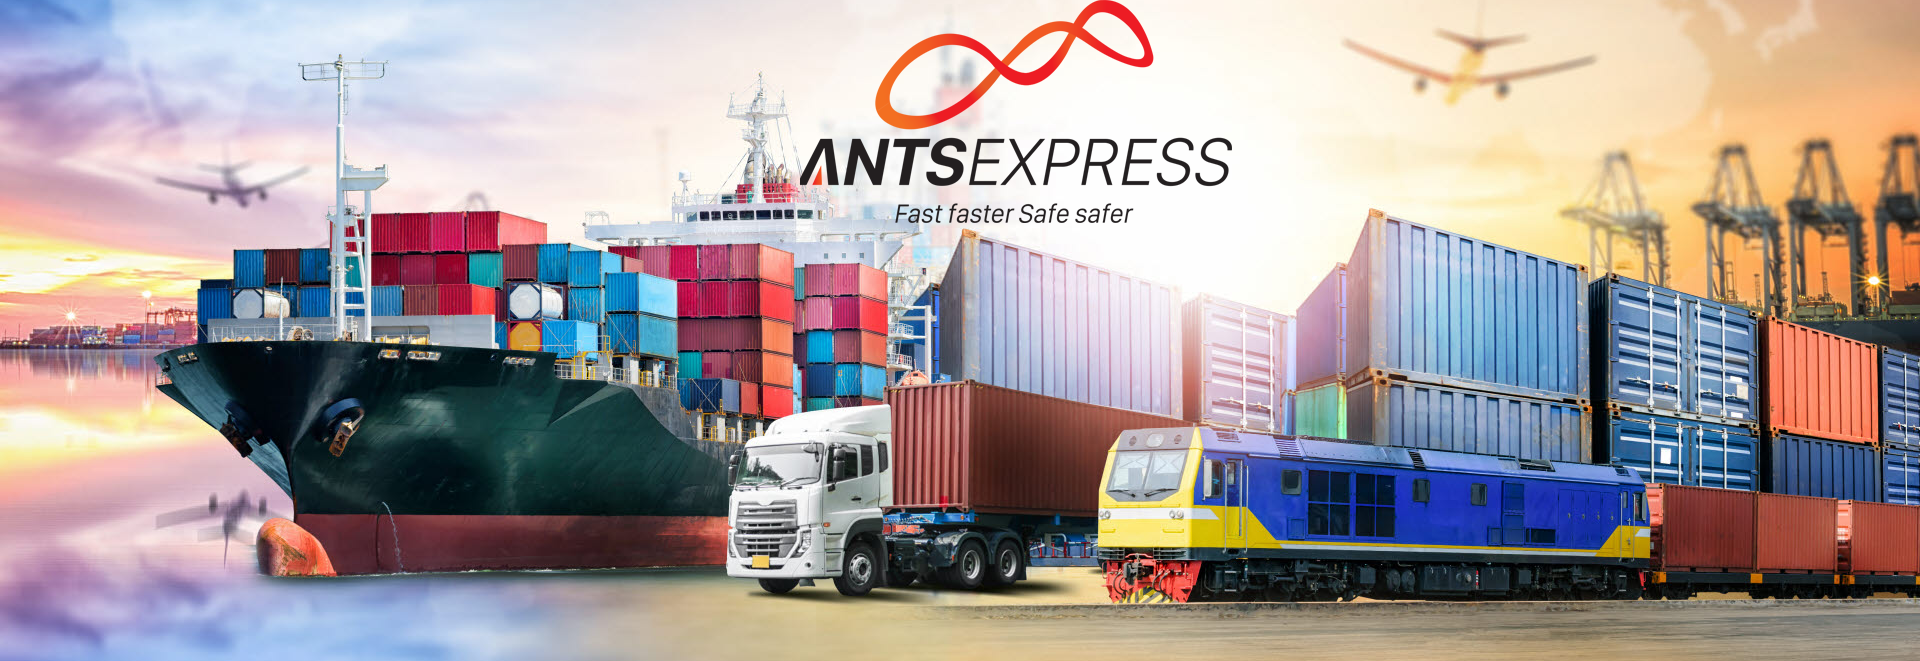 Giá cước vận chuyển hàng hóa của Antsexpress